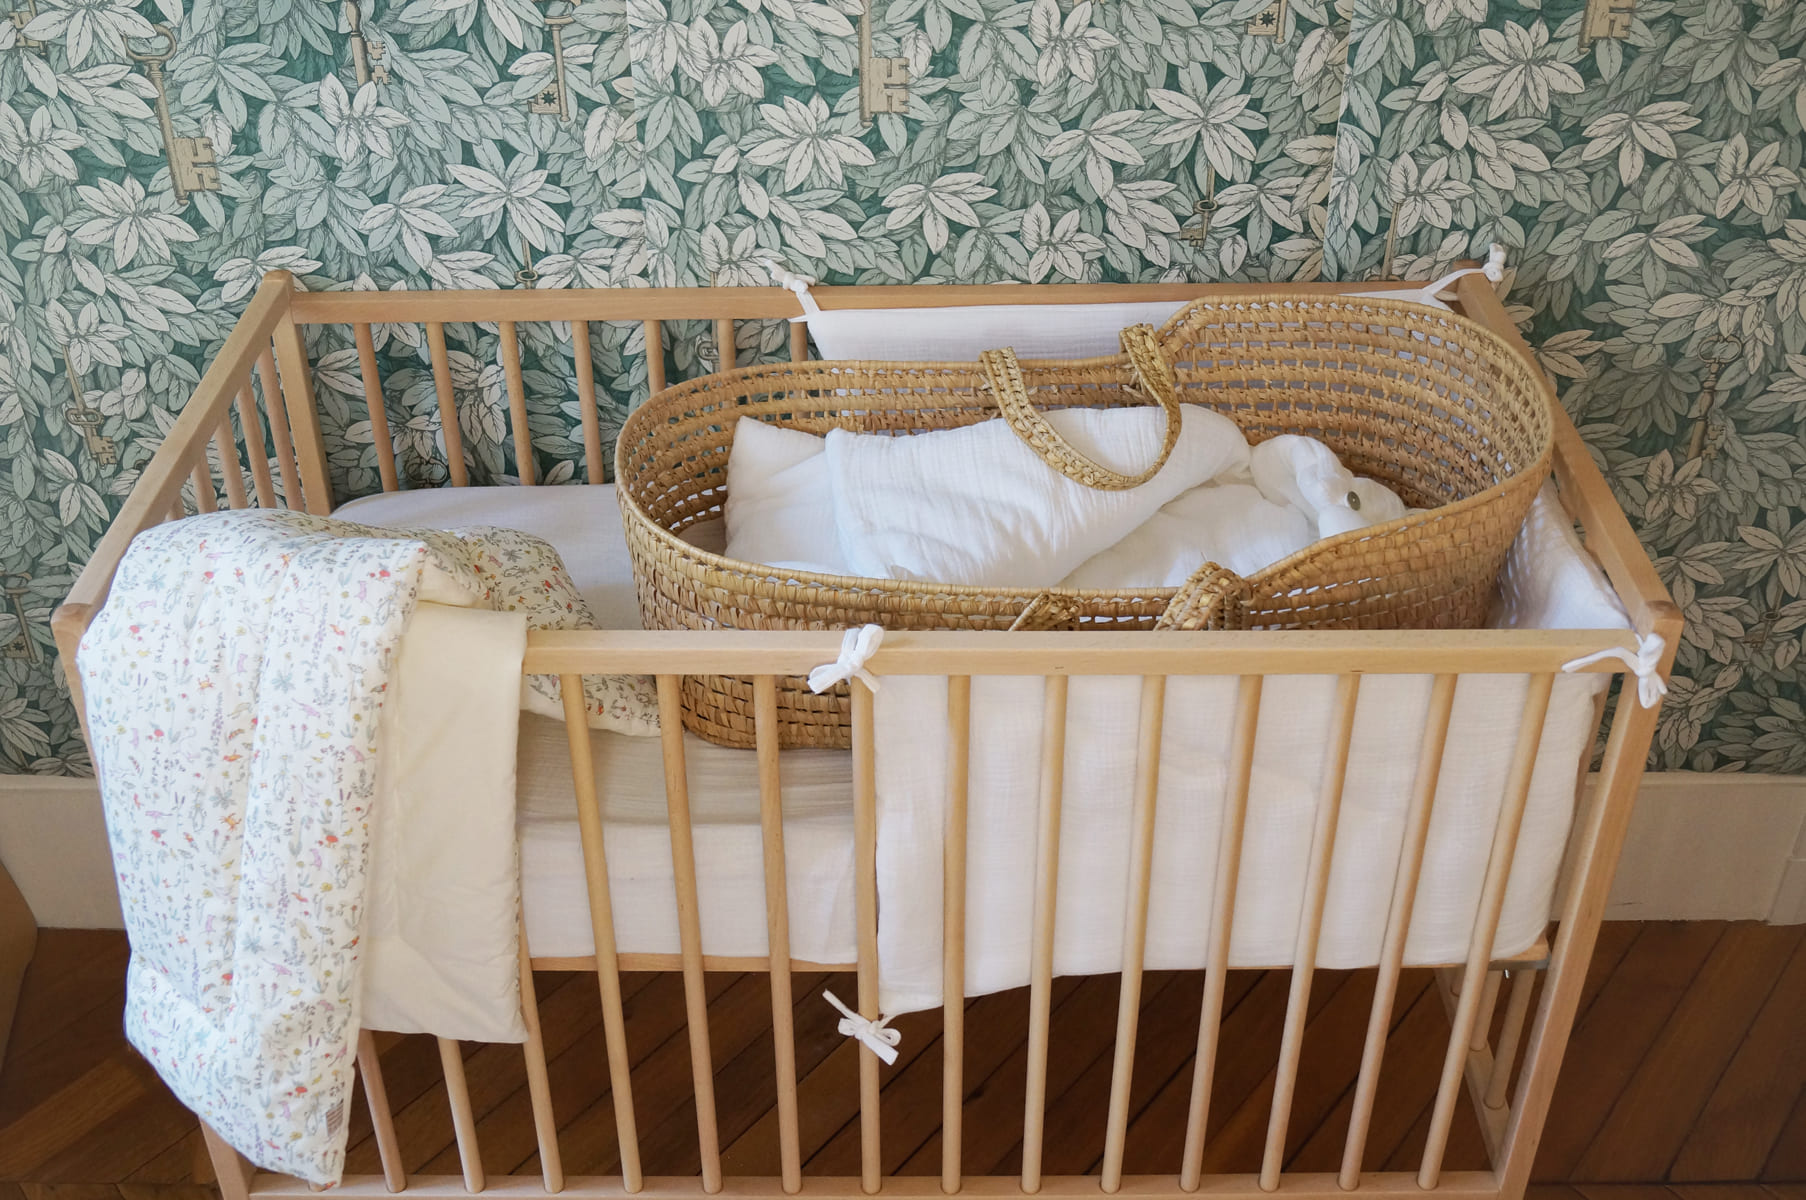 Tour de lit pour lit bébé et berceau - Bambinou